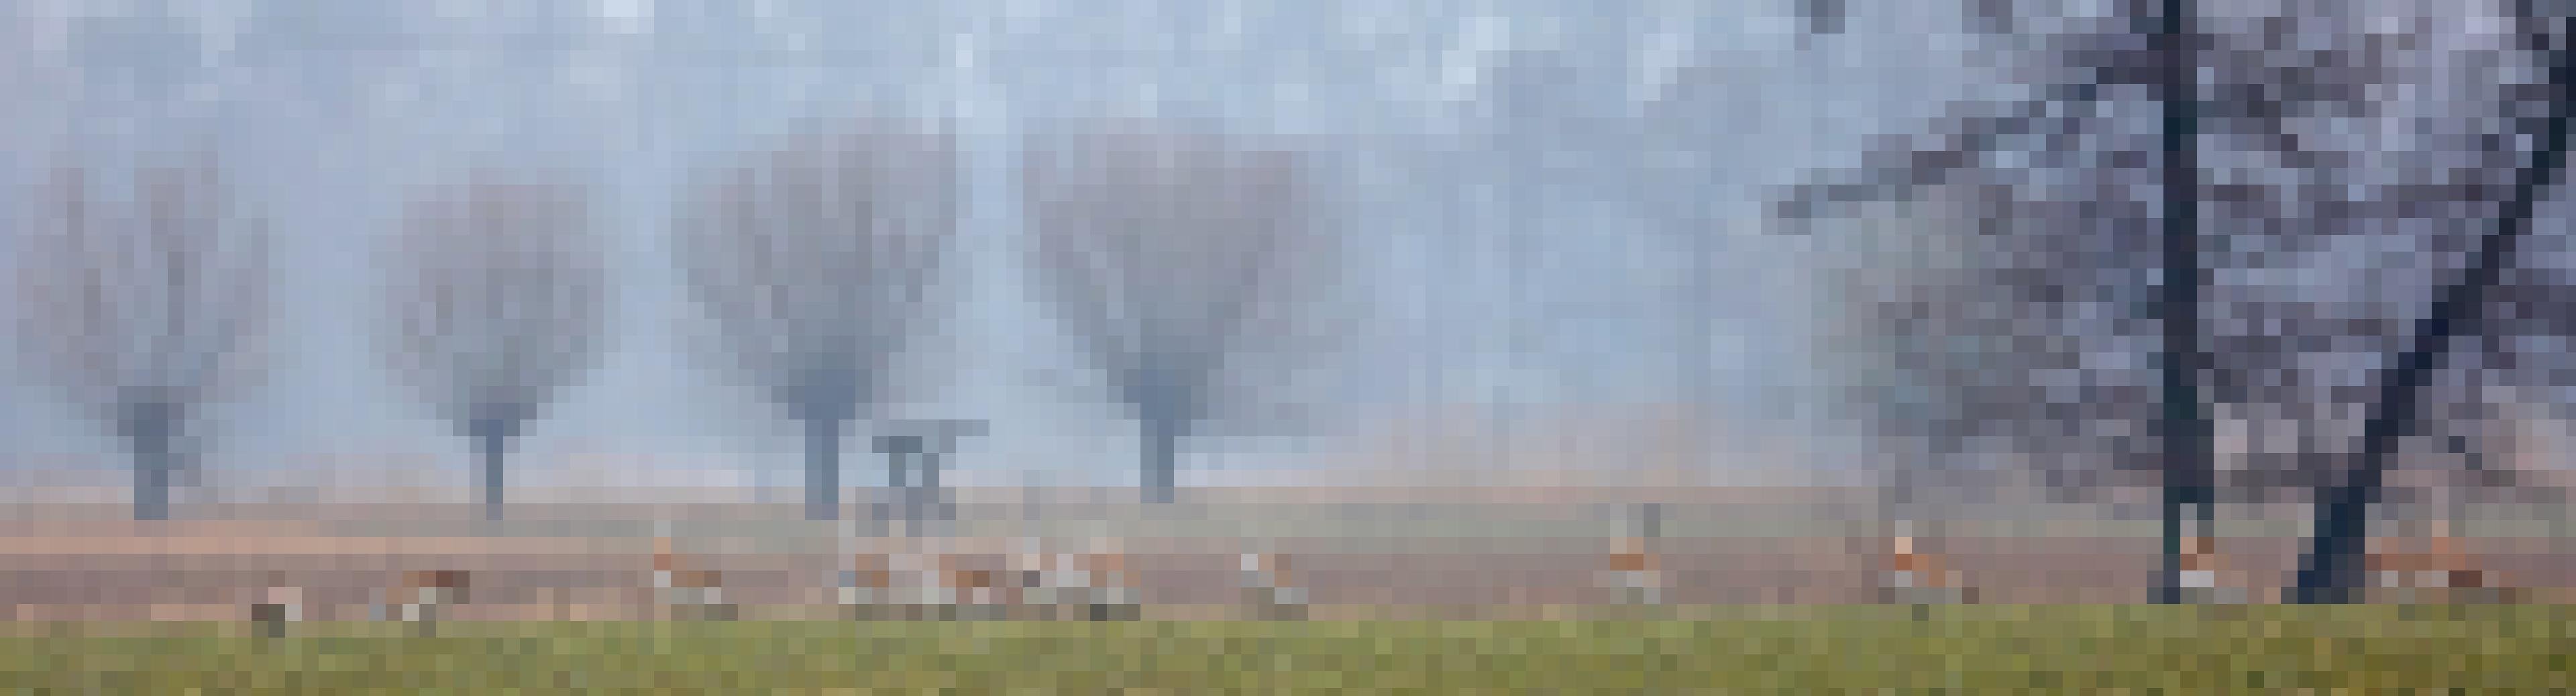 Eine Gruppe von Großtrappen steht auf einem nebelumwehten Feld.